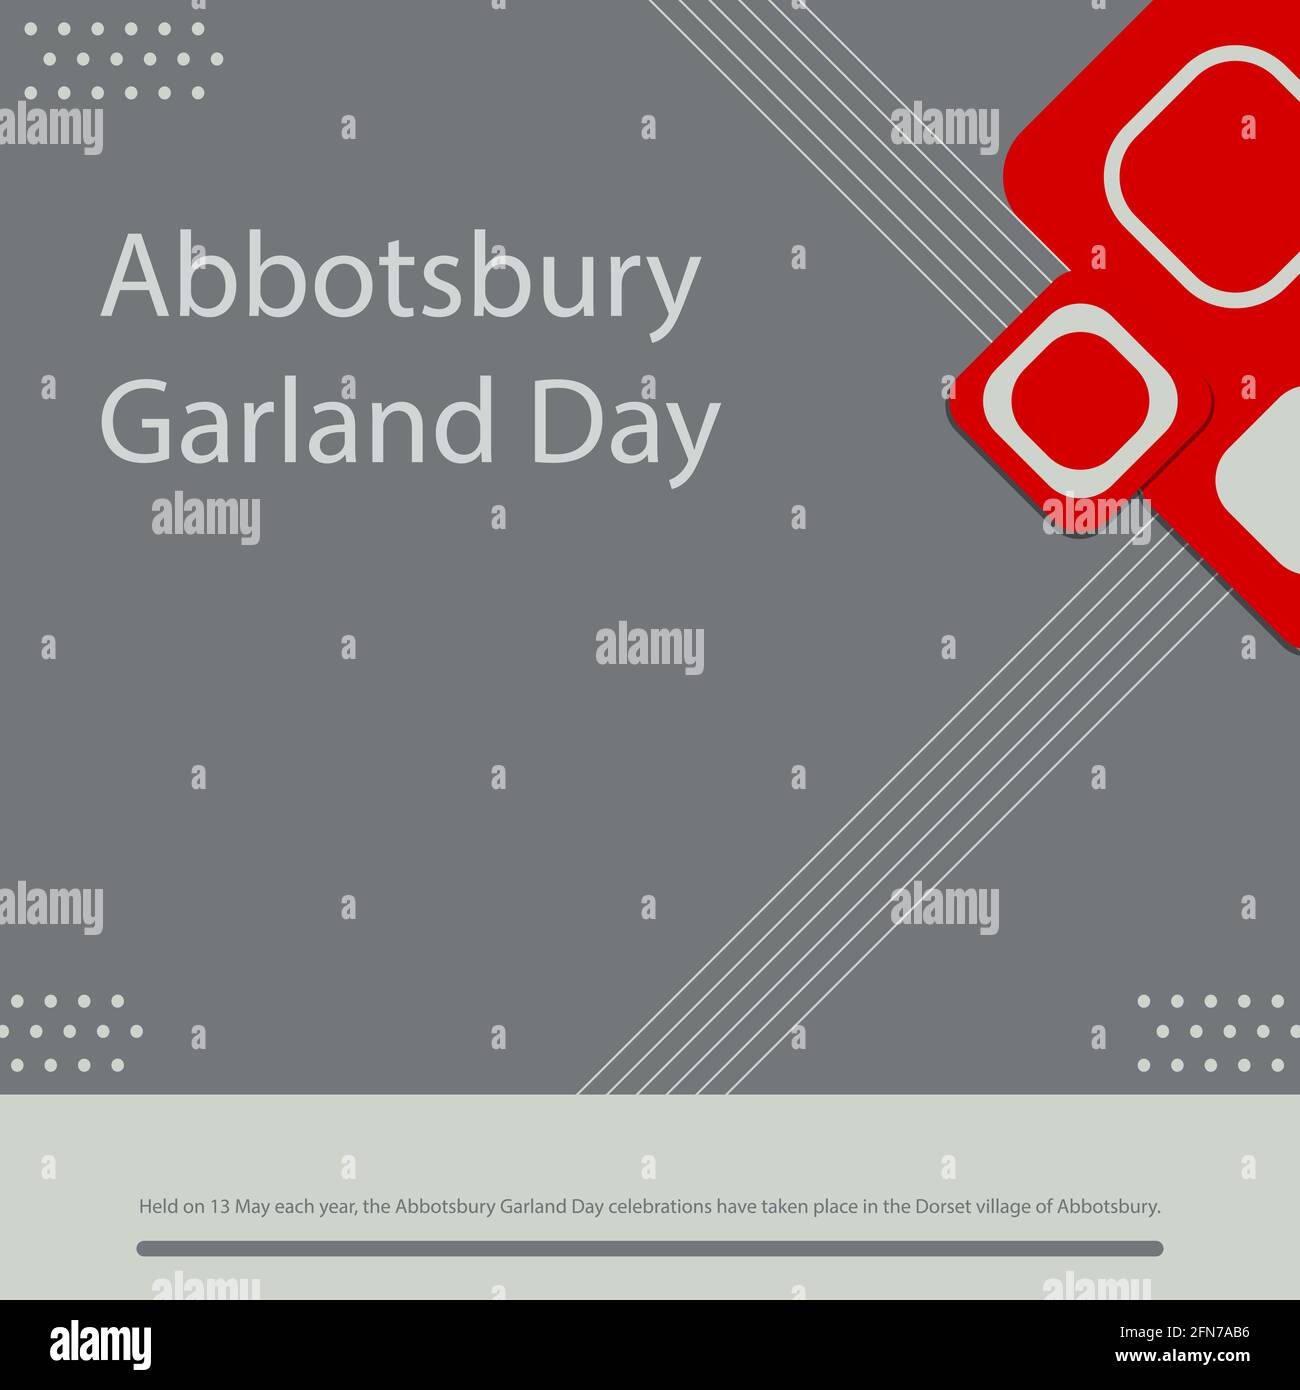 Le 13 mai de chaque année, les célébrations de la fête du Garland d'Abbotsbury ont eu lieu dans le village de Dorset, à Abbotsbury. Illustration de Vecteur